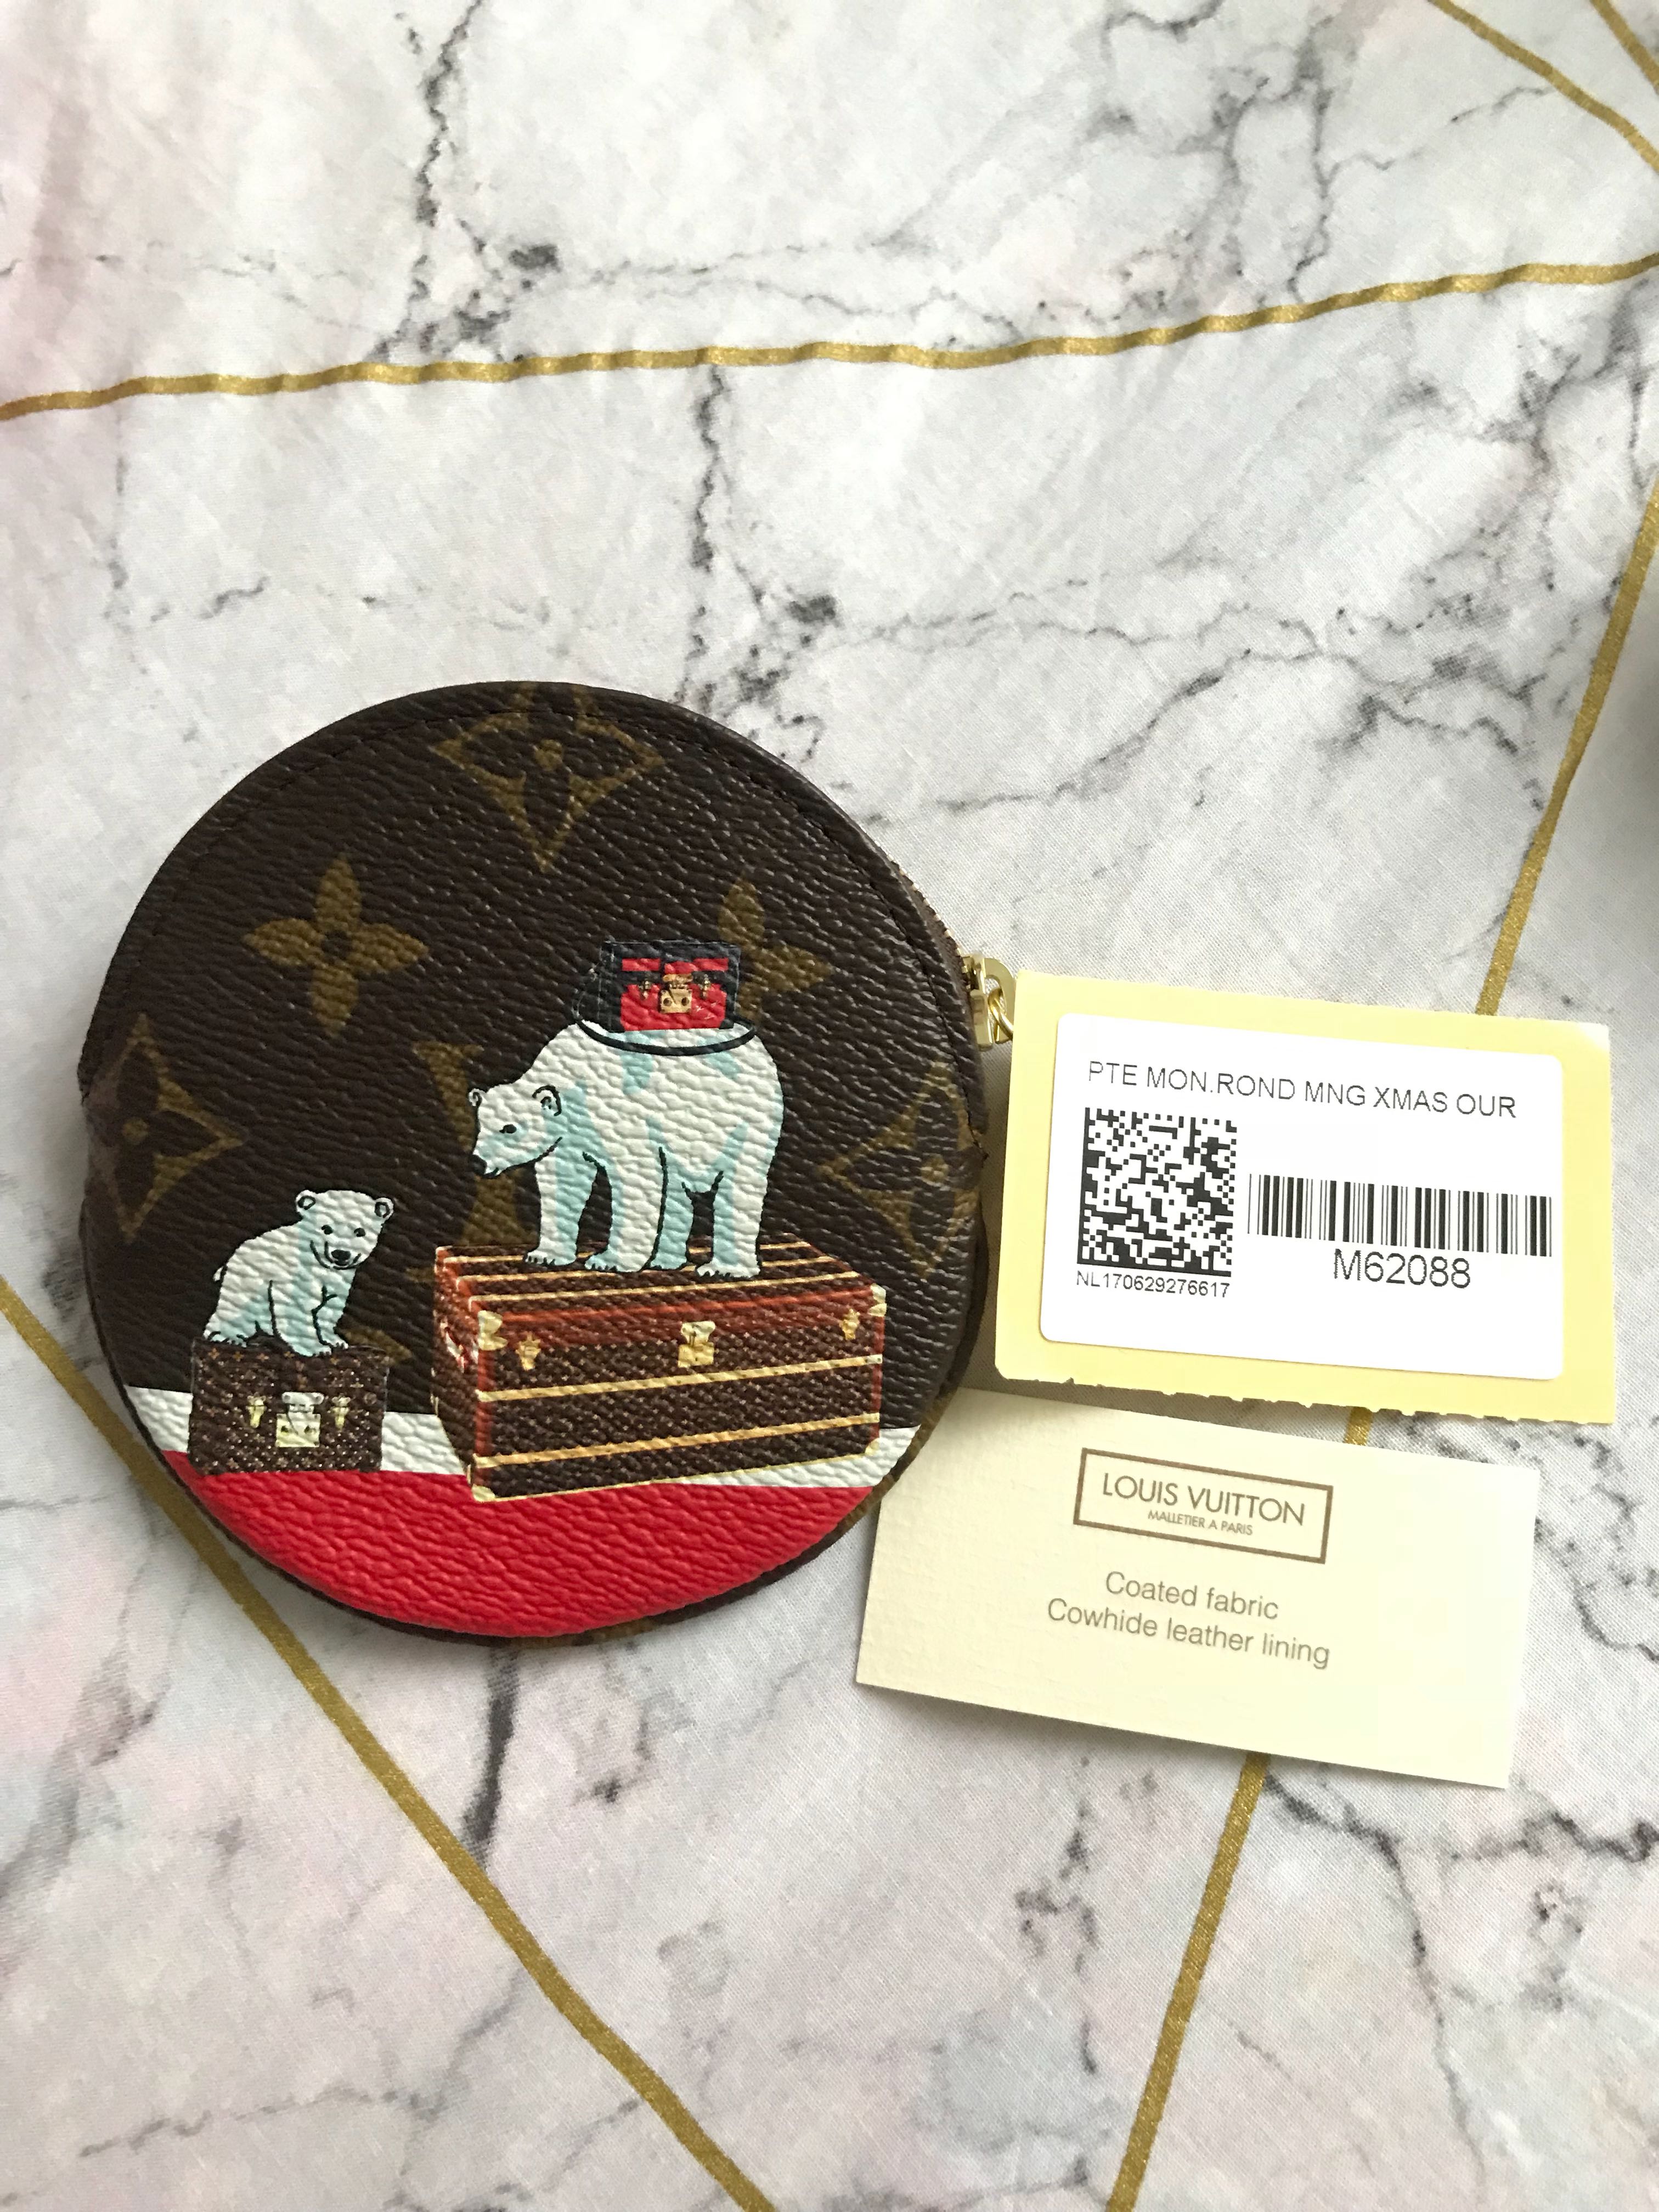 Louis Vuitton polar bear SLG coin purse Christmas 2017